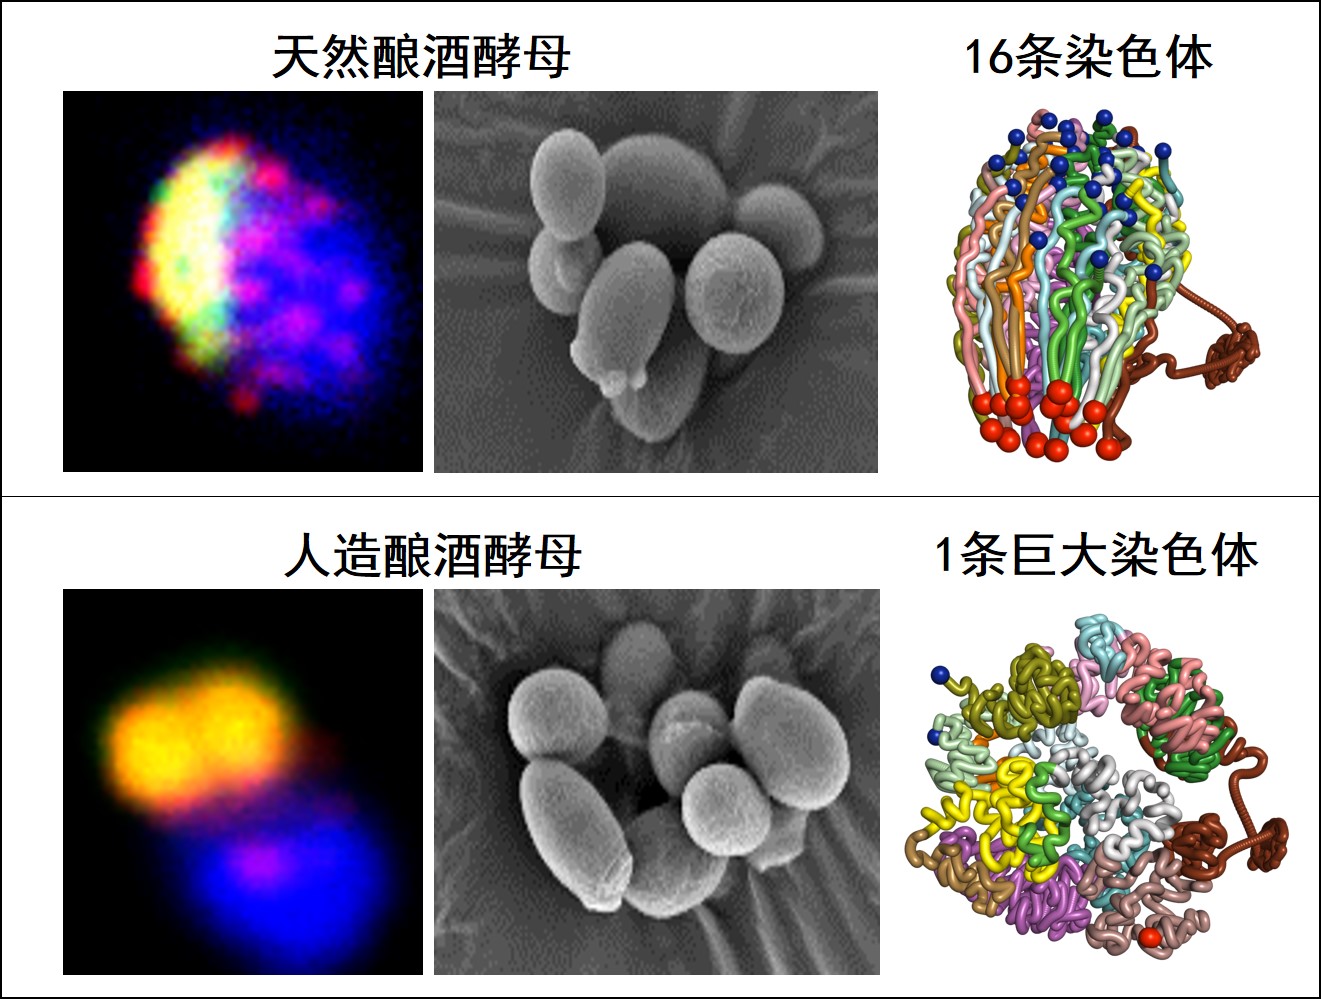 2、人造单染色体酵母与天然酵母细胞对比图，两者形态相似，但染色体的三维结构有巨大改变.jpg